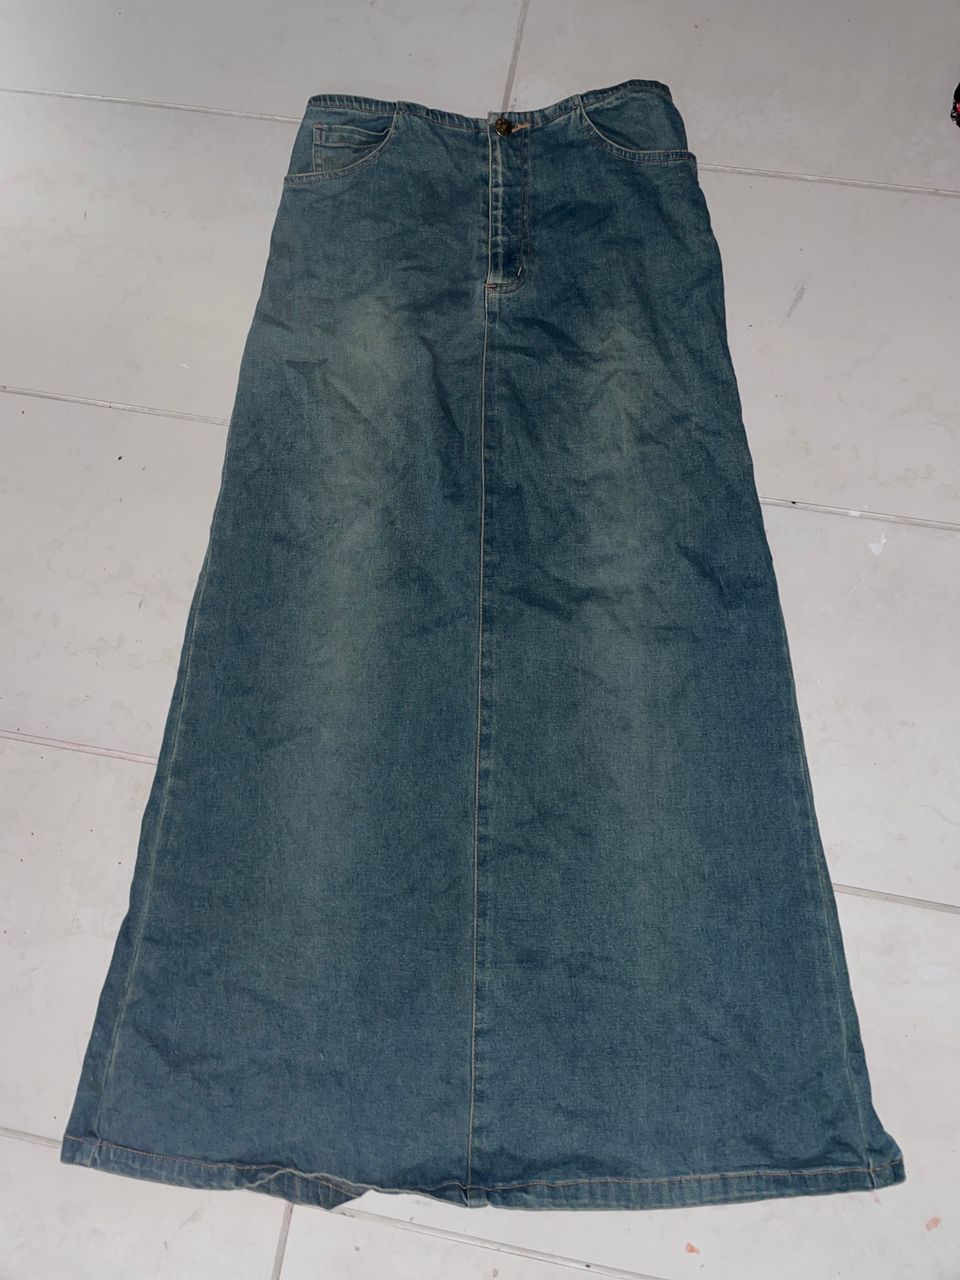 Vintage farkku maxi skirt